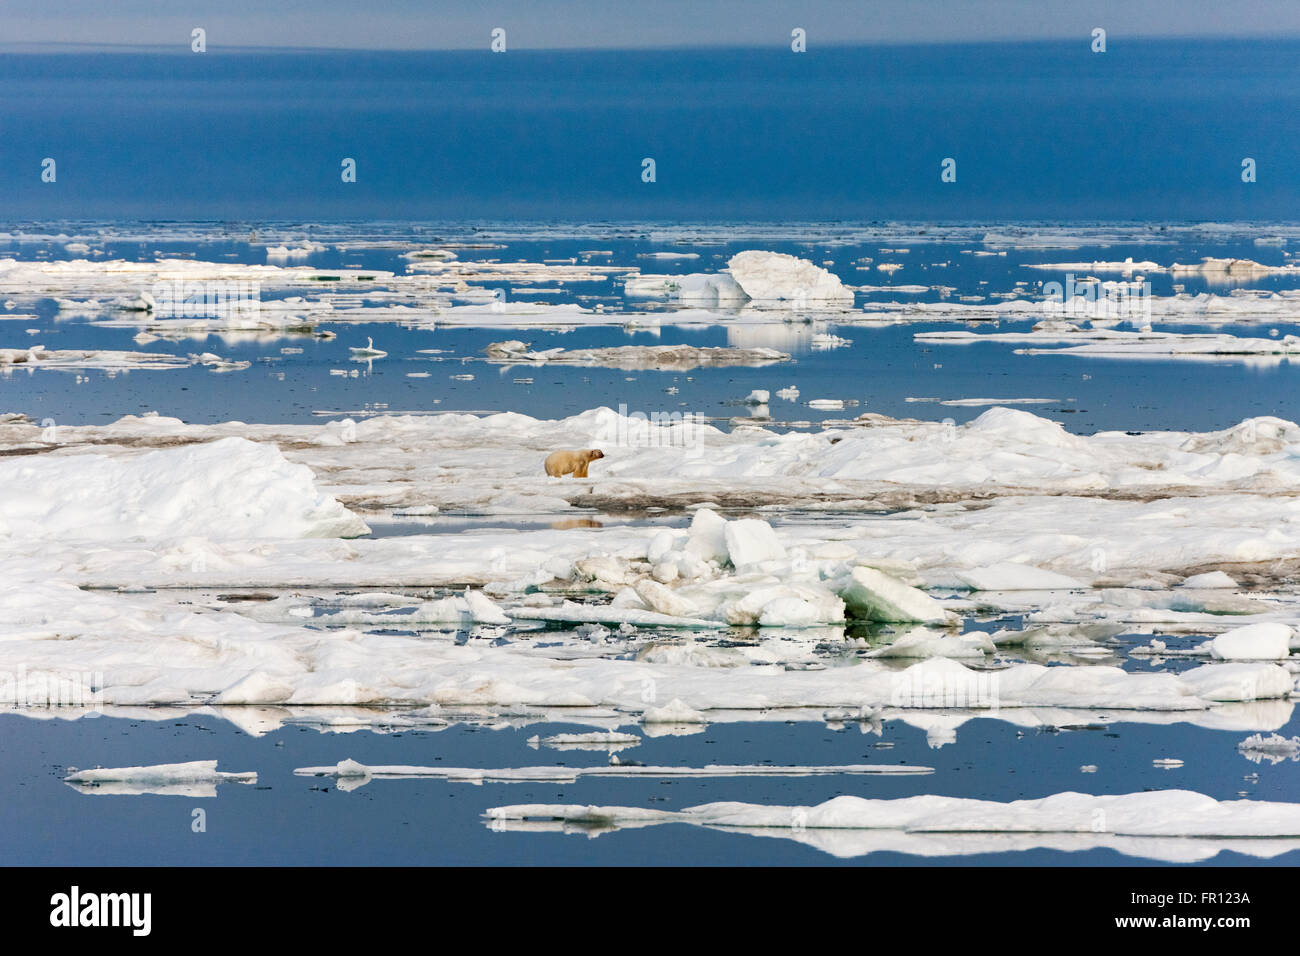 L'ours polaire sur la glace flottante, mer de Tchoukotka, en Russie extrême-orient Banque D'Images